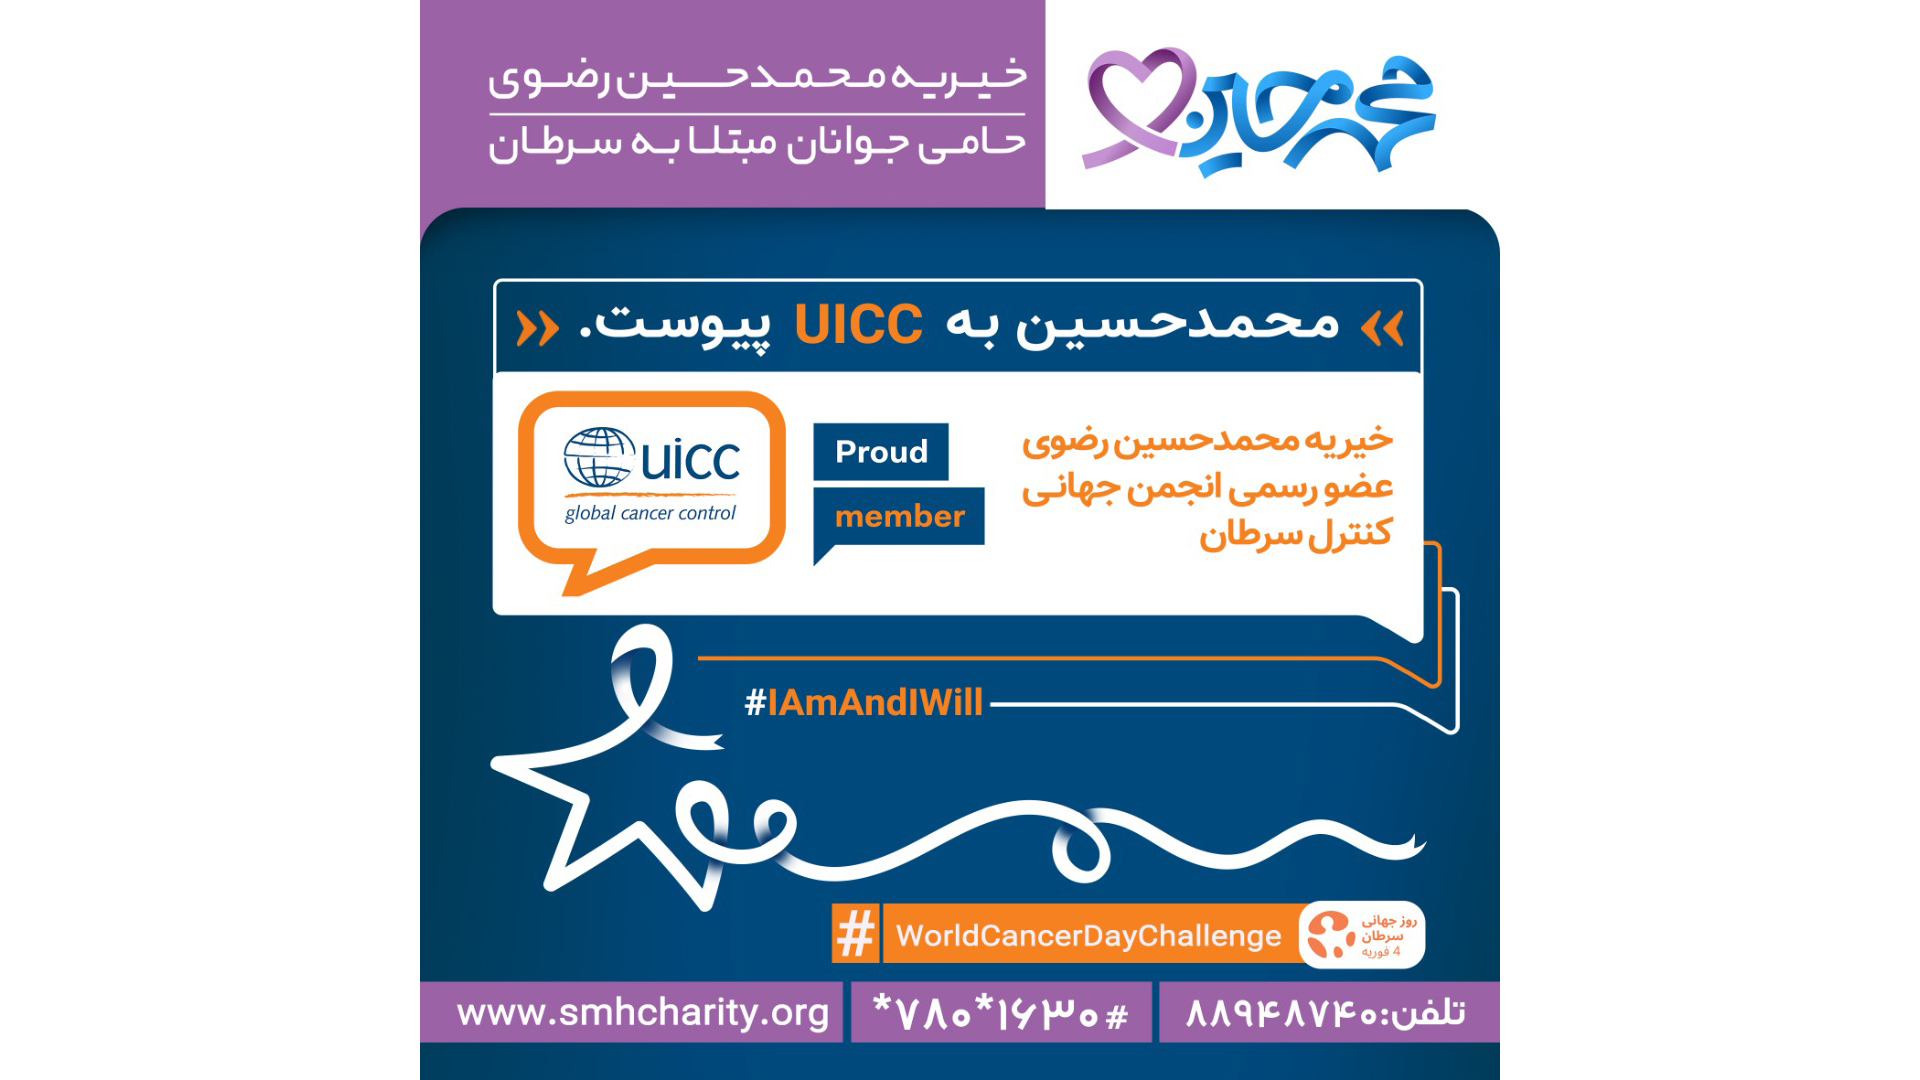 مؤسسه خیریه محمدحسین رضوی به عضویت رسمی انجمن کنترل جهانی سرطان UICC در آمد